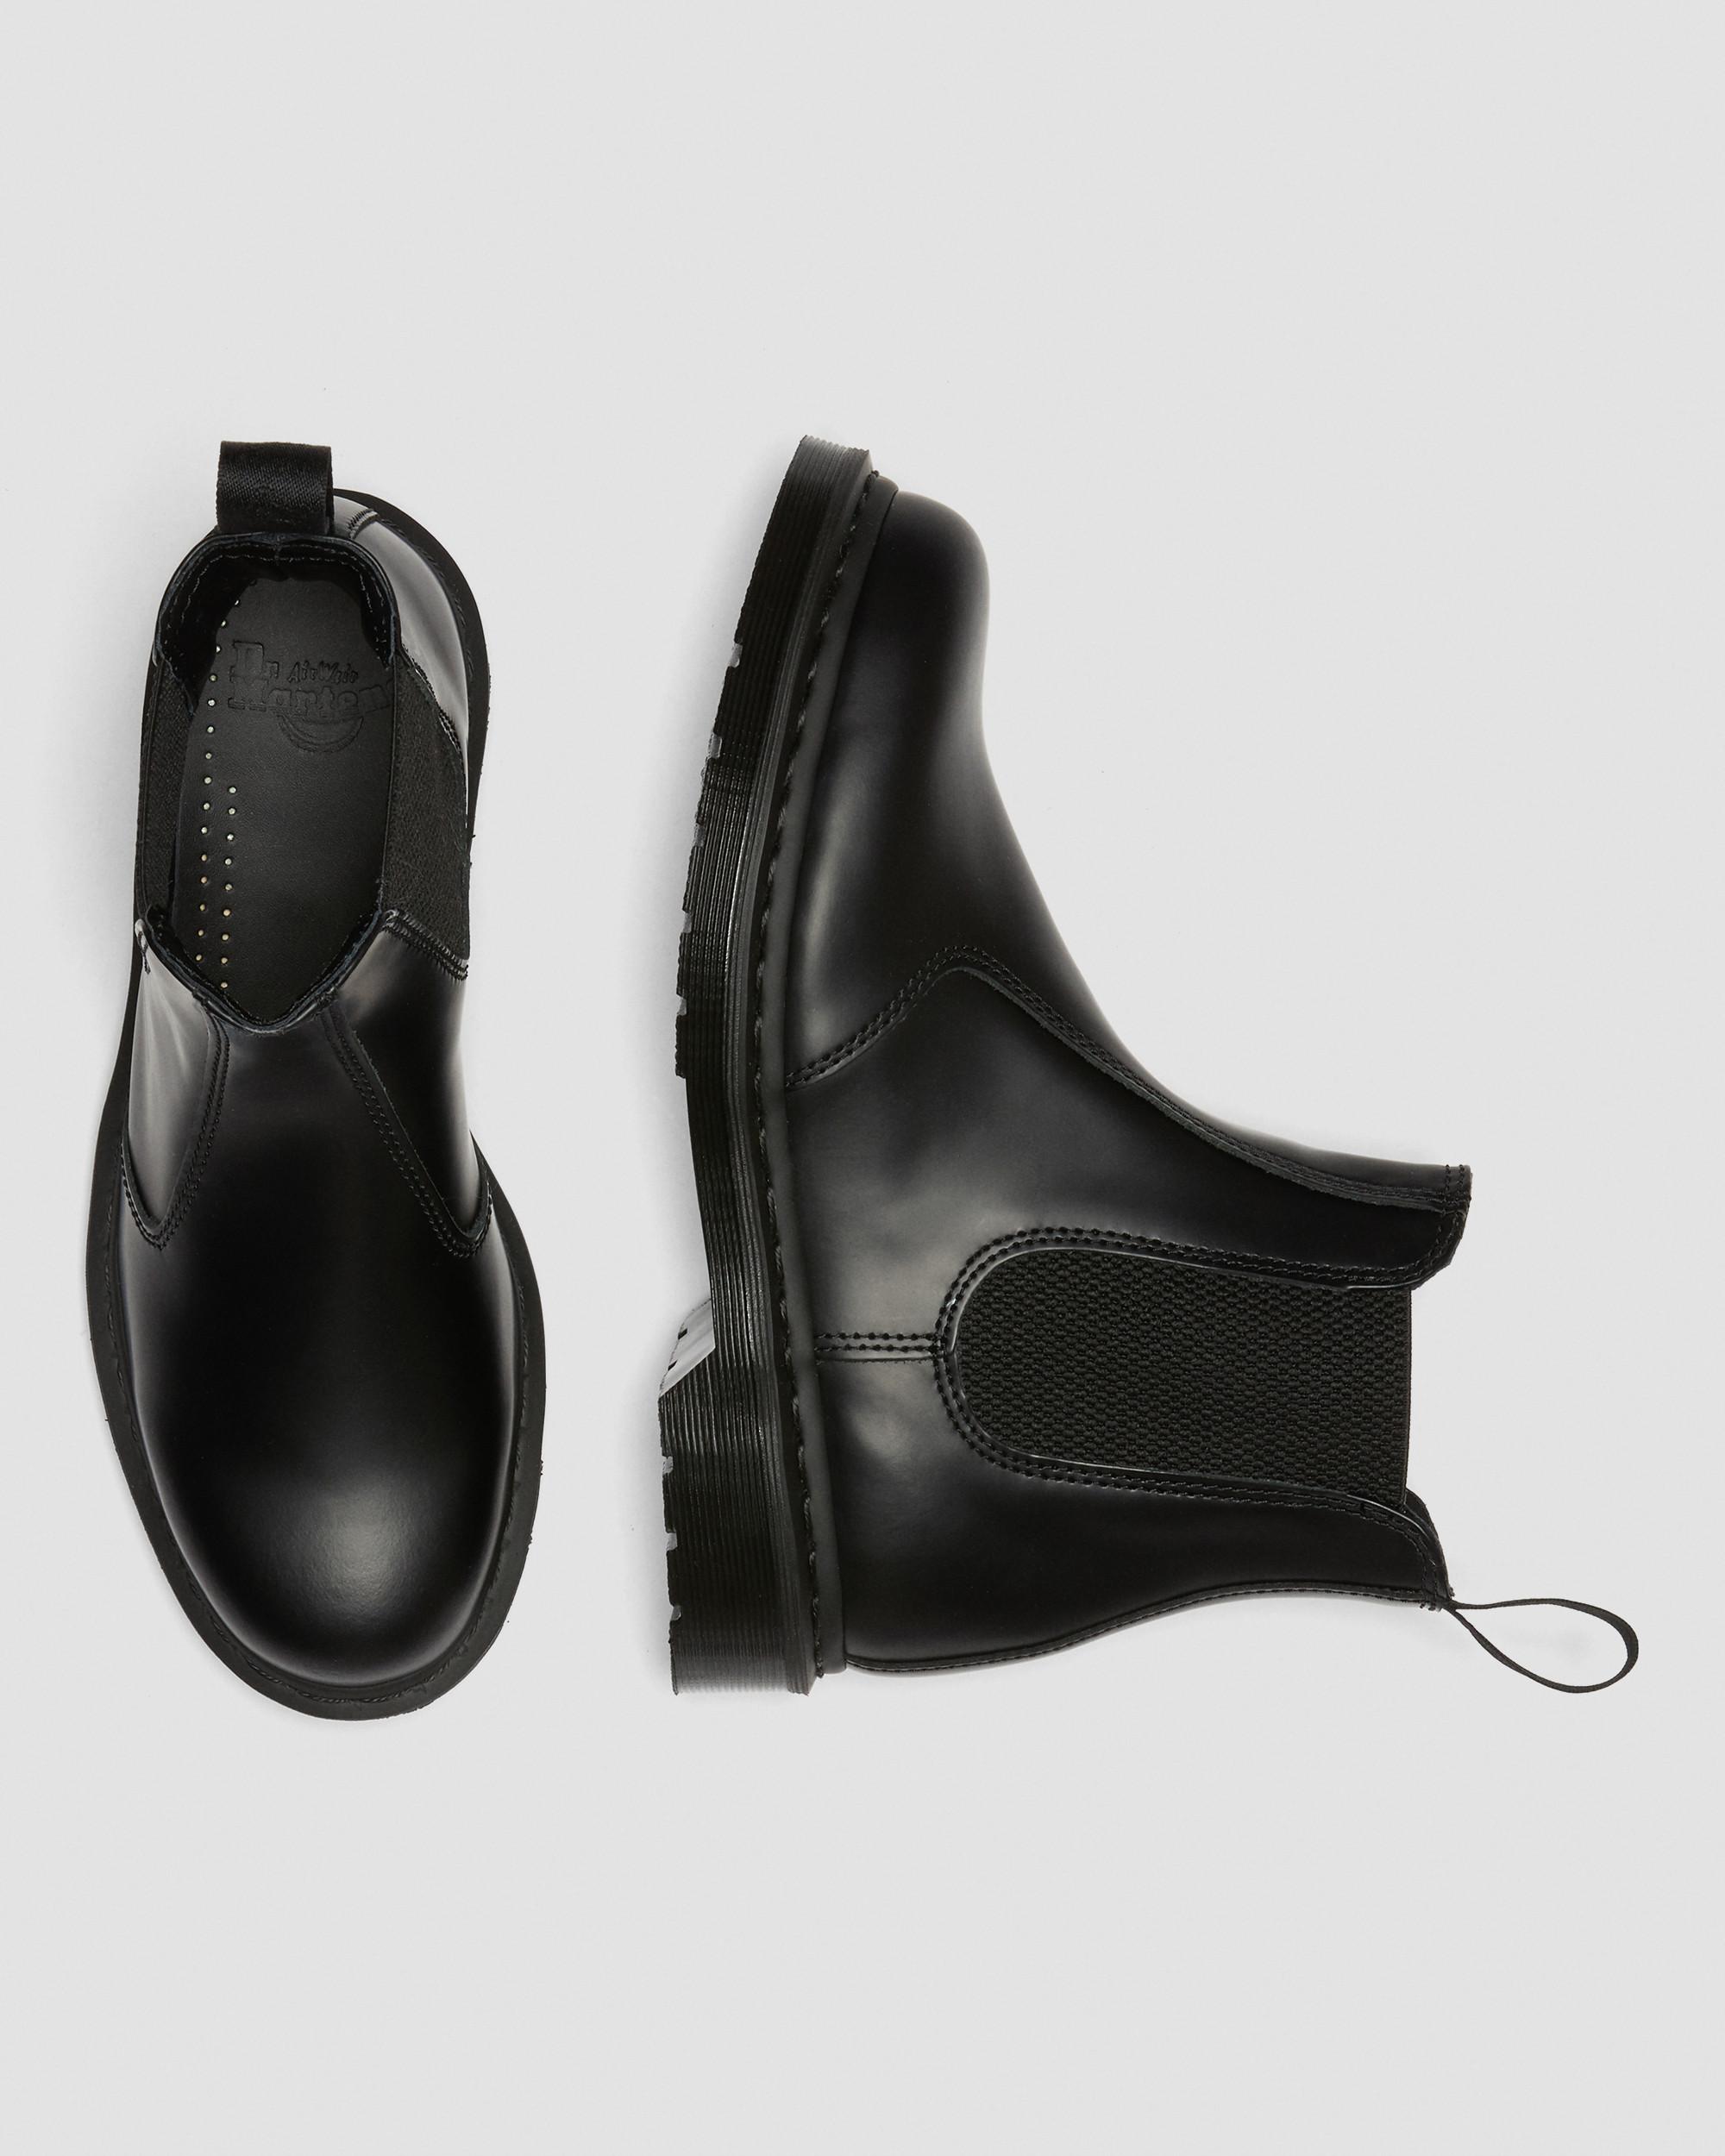 Dr. Doc Martens 2976 Black Leather Chelsea Boots Men's US Size 11 Men’s